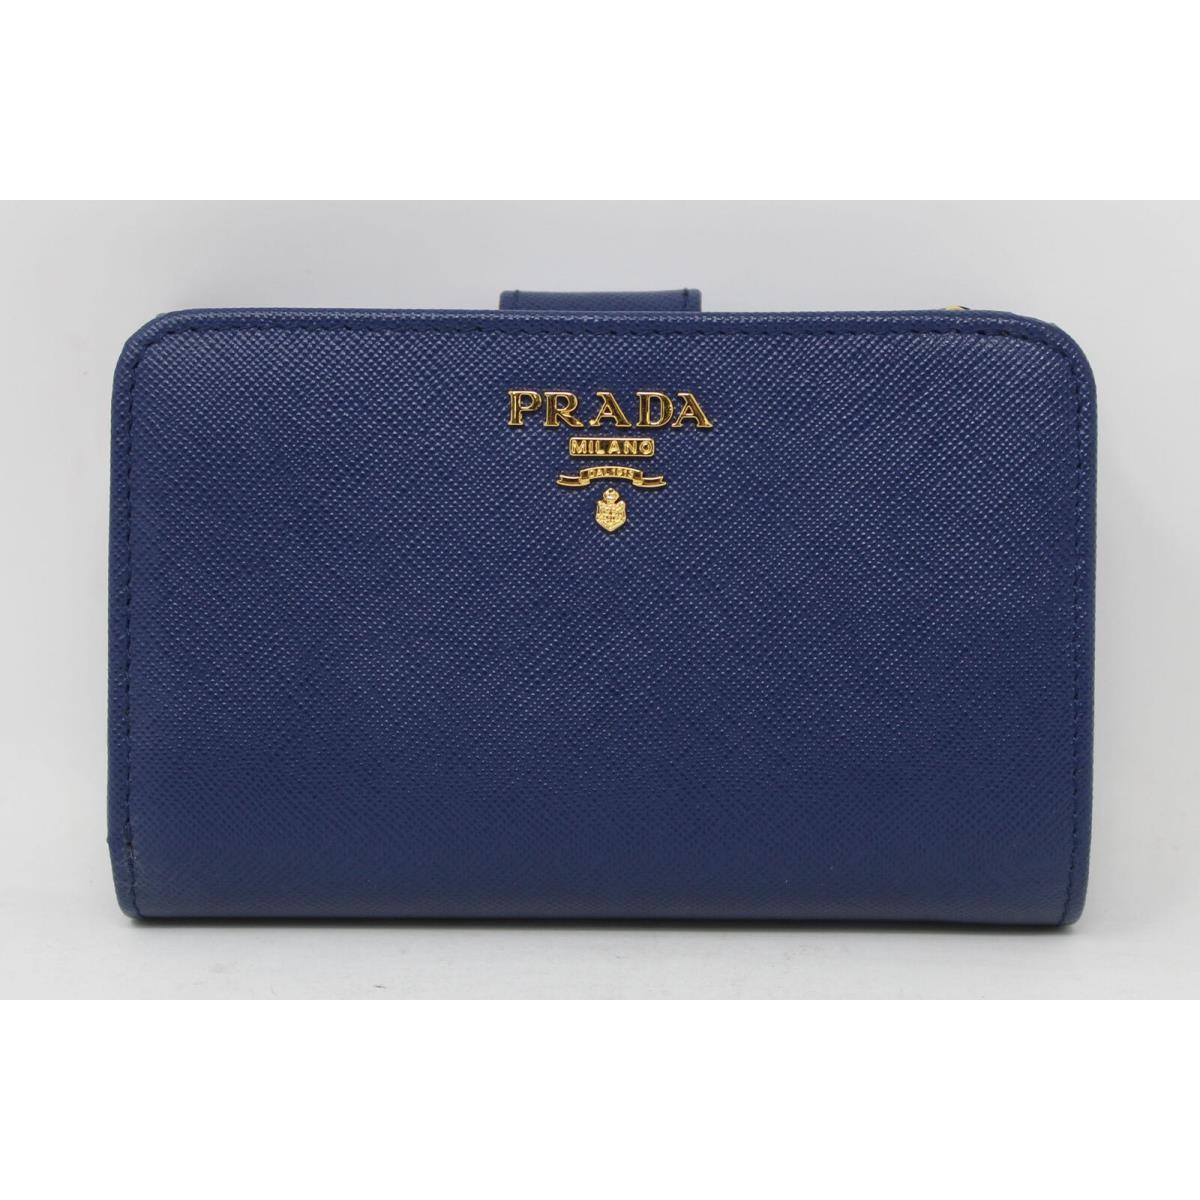 Prada Saffiano Leather Small Wallet Bluette